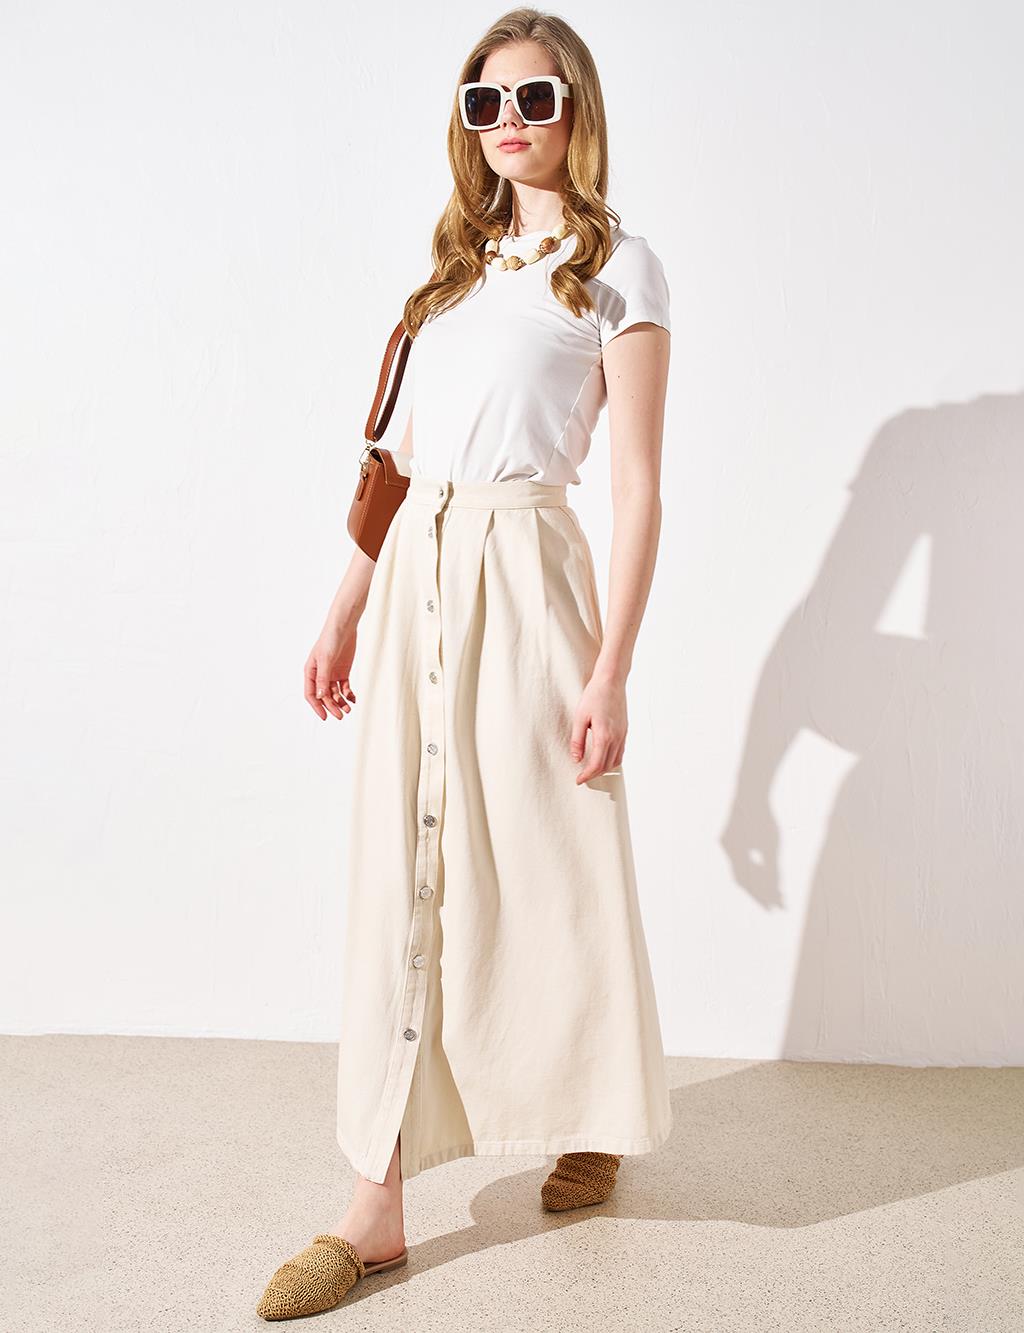 Джинсовая юбка на пуговицах Кремовая Kayra плиссированная юбка на пуговицах цвета бежевого песка kayra